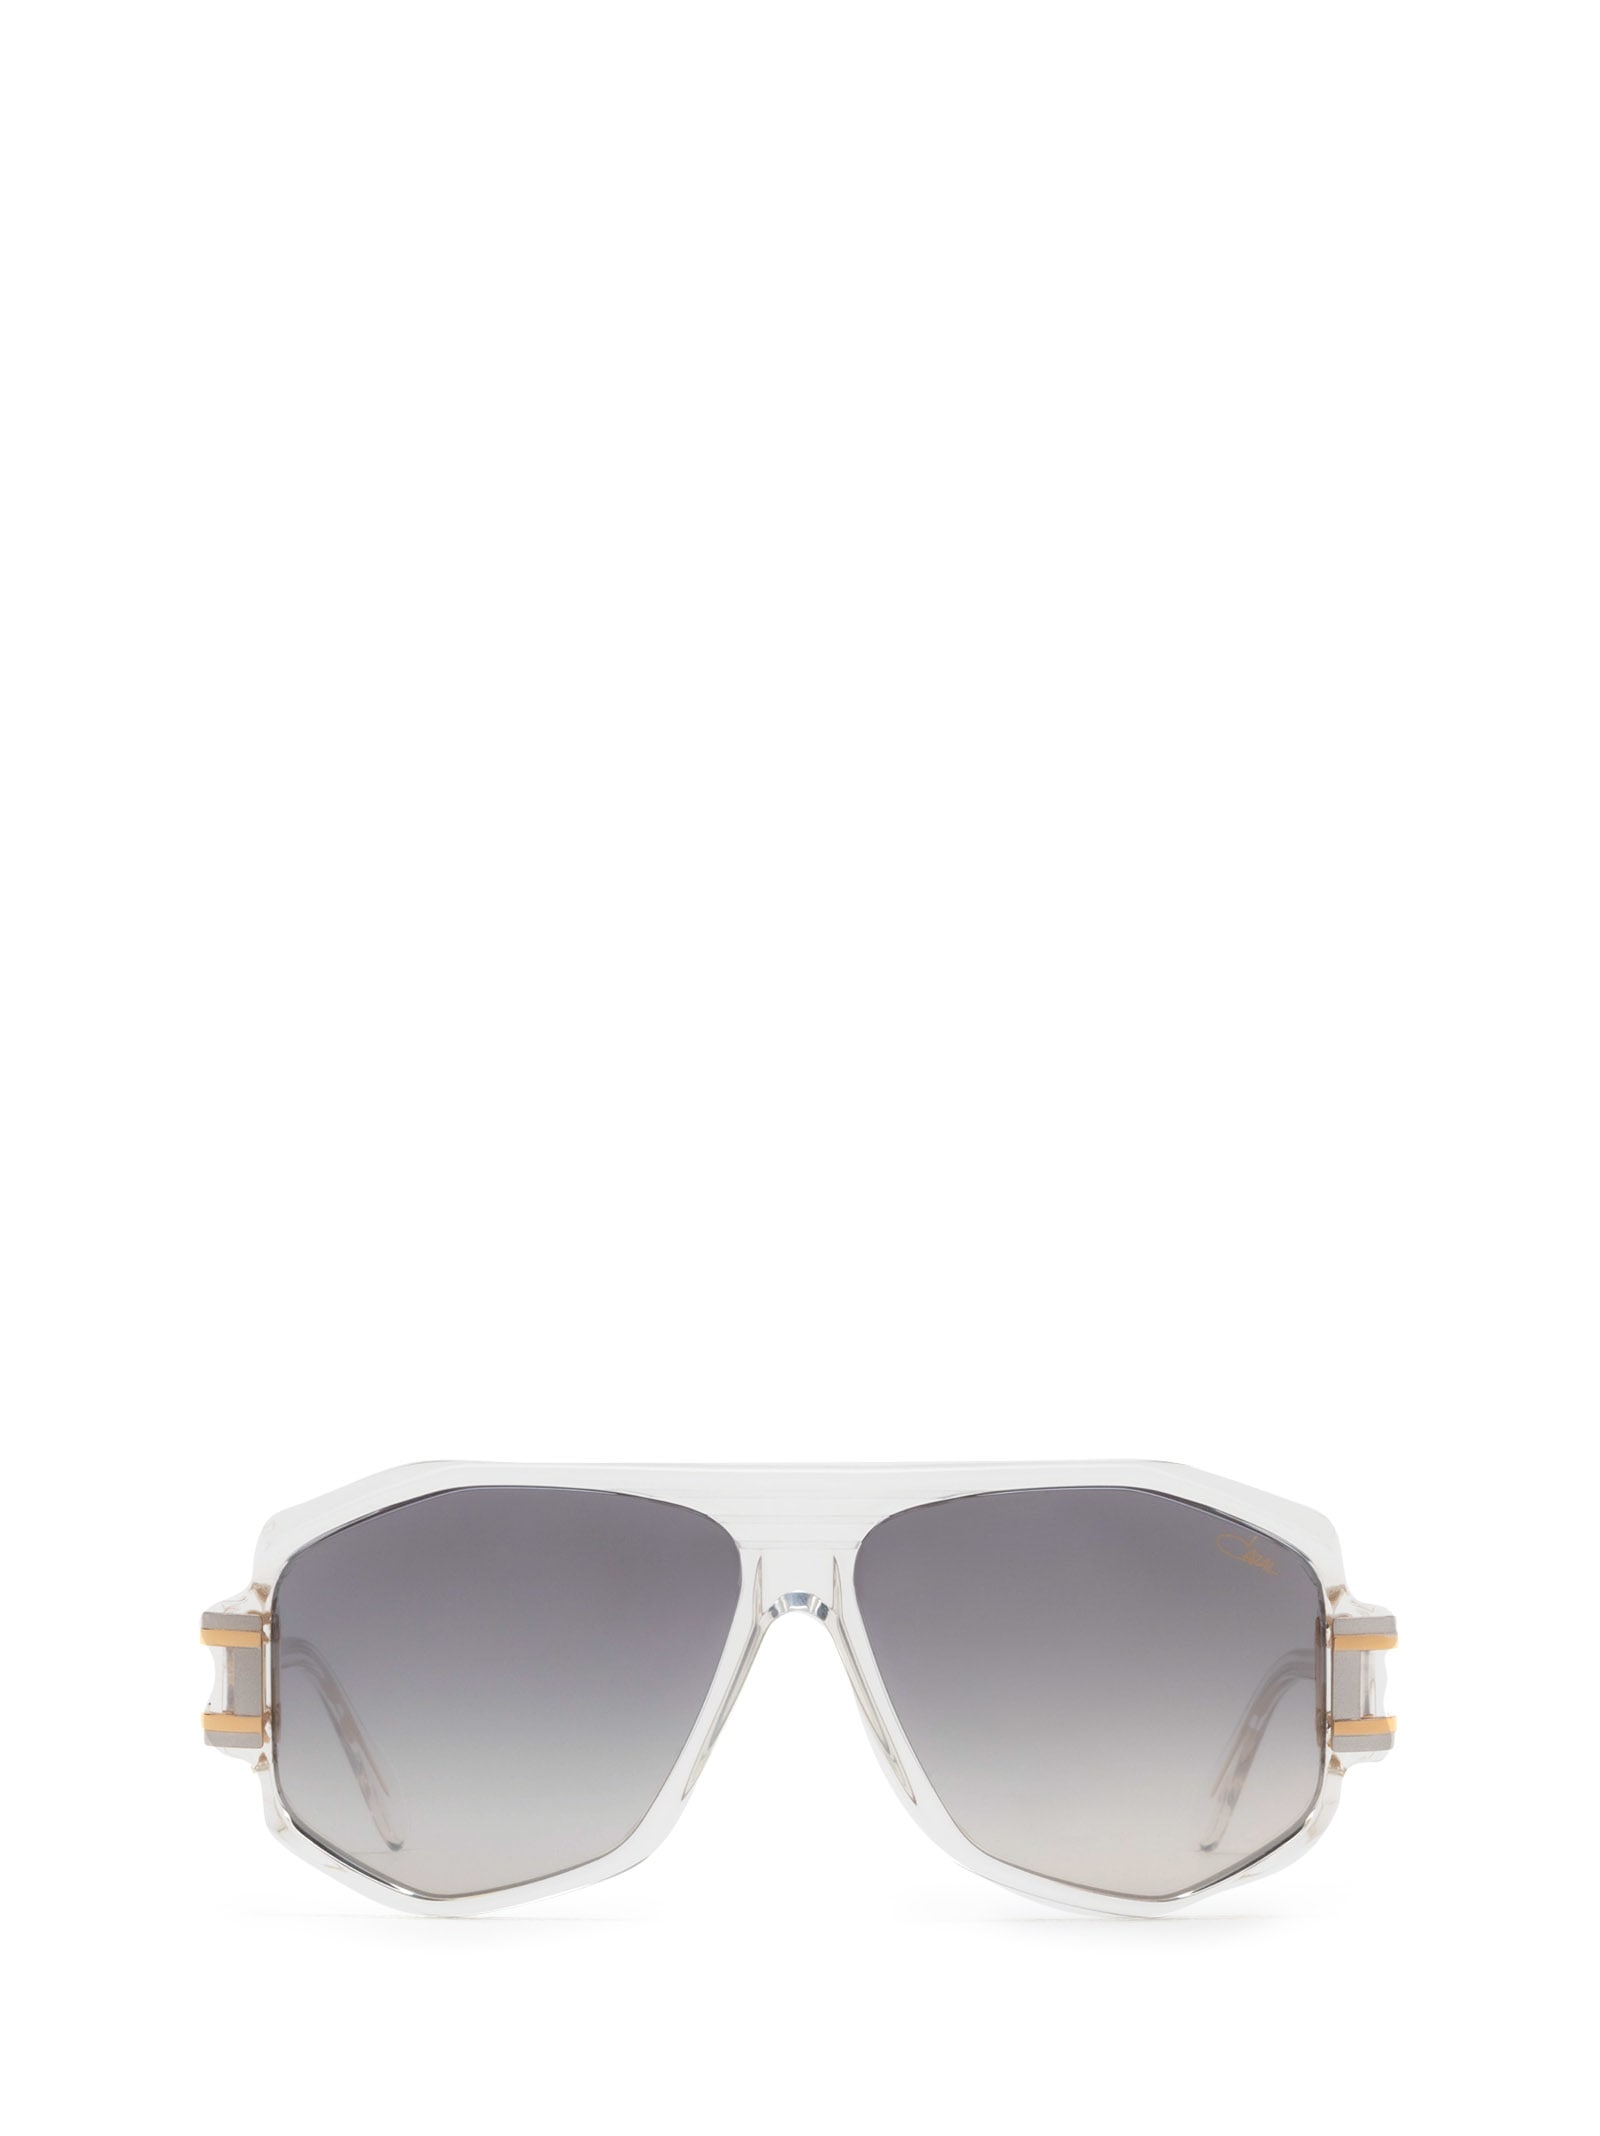 Cazal 163/3 Crystal - Bicolour Sunglasses